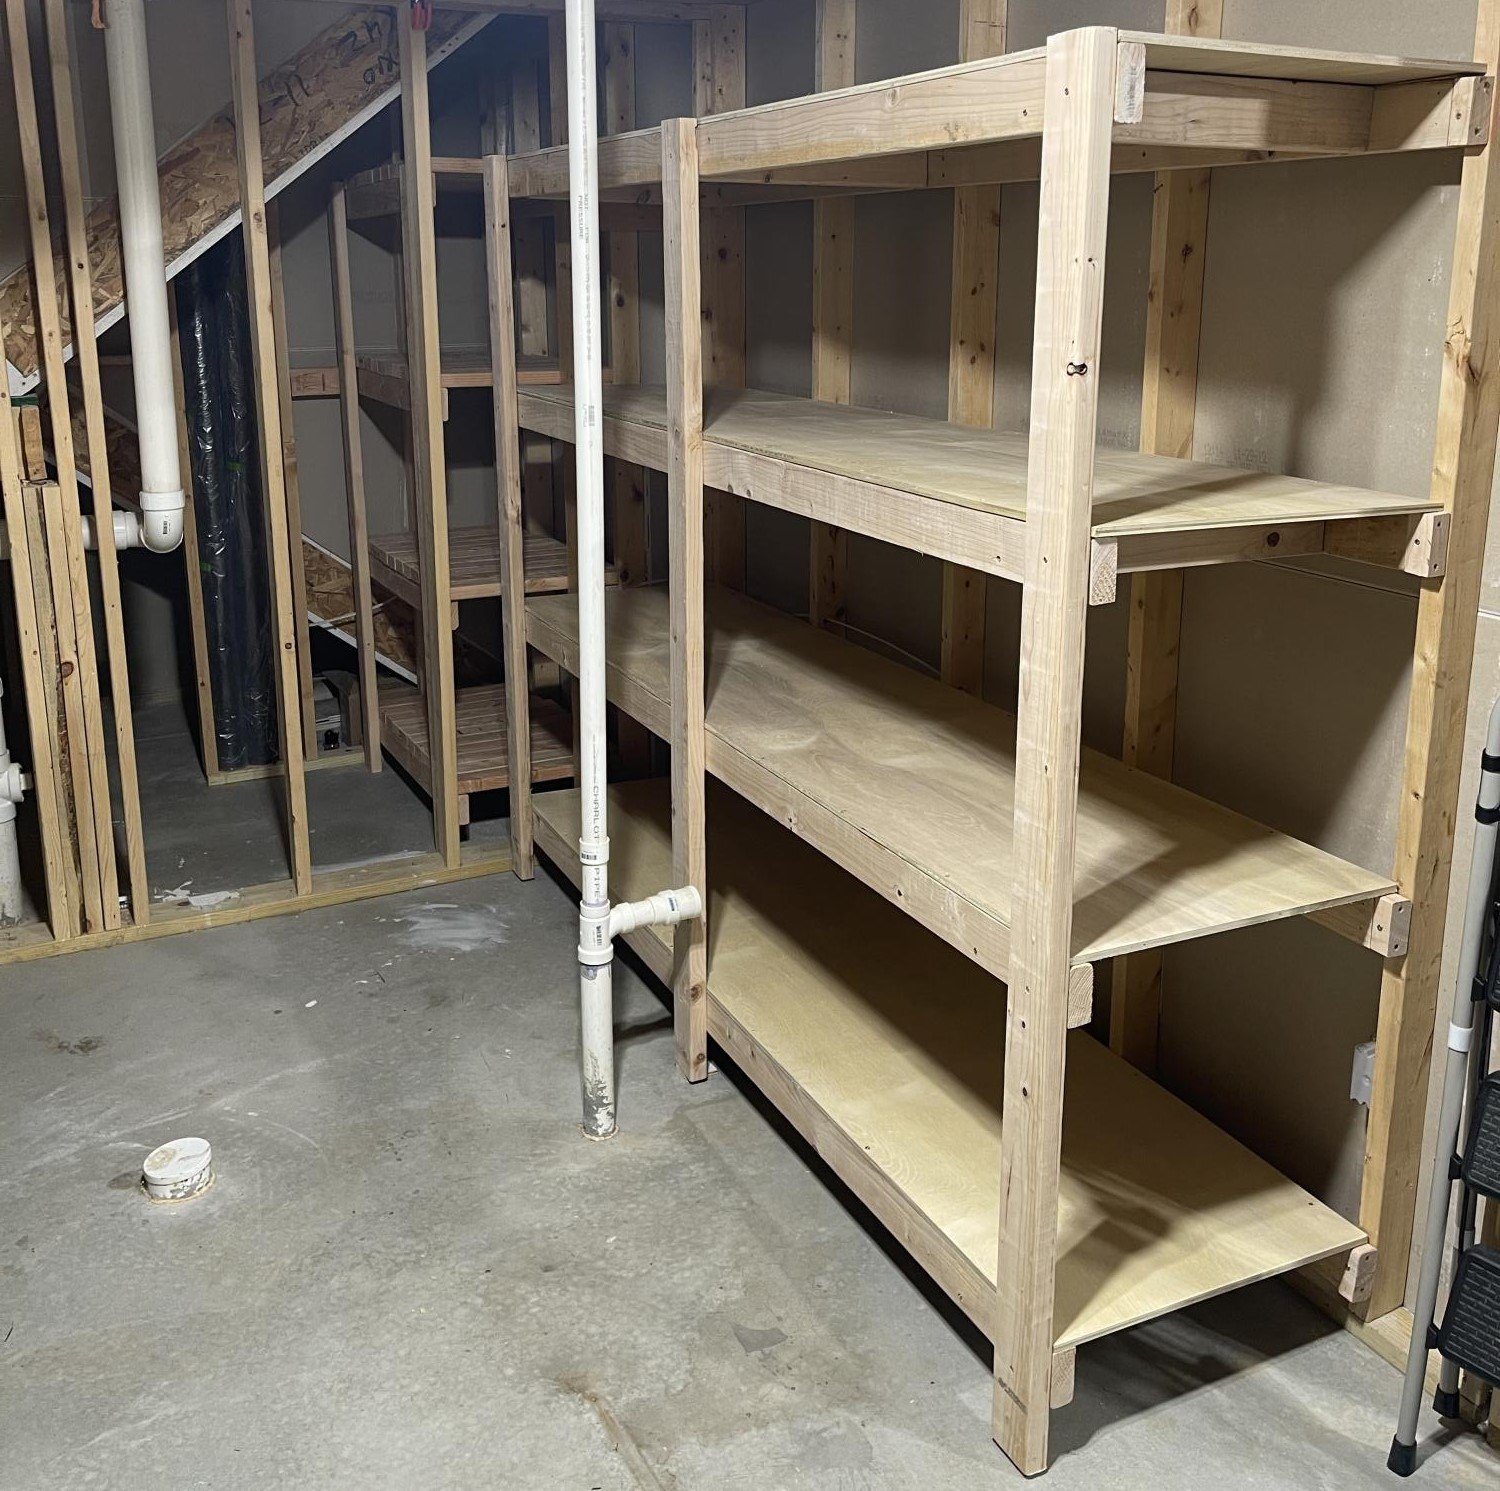 5 Basement Under Stairs Storage Ideas - Shelterness